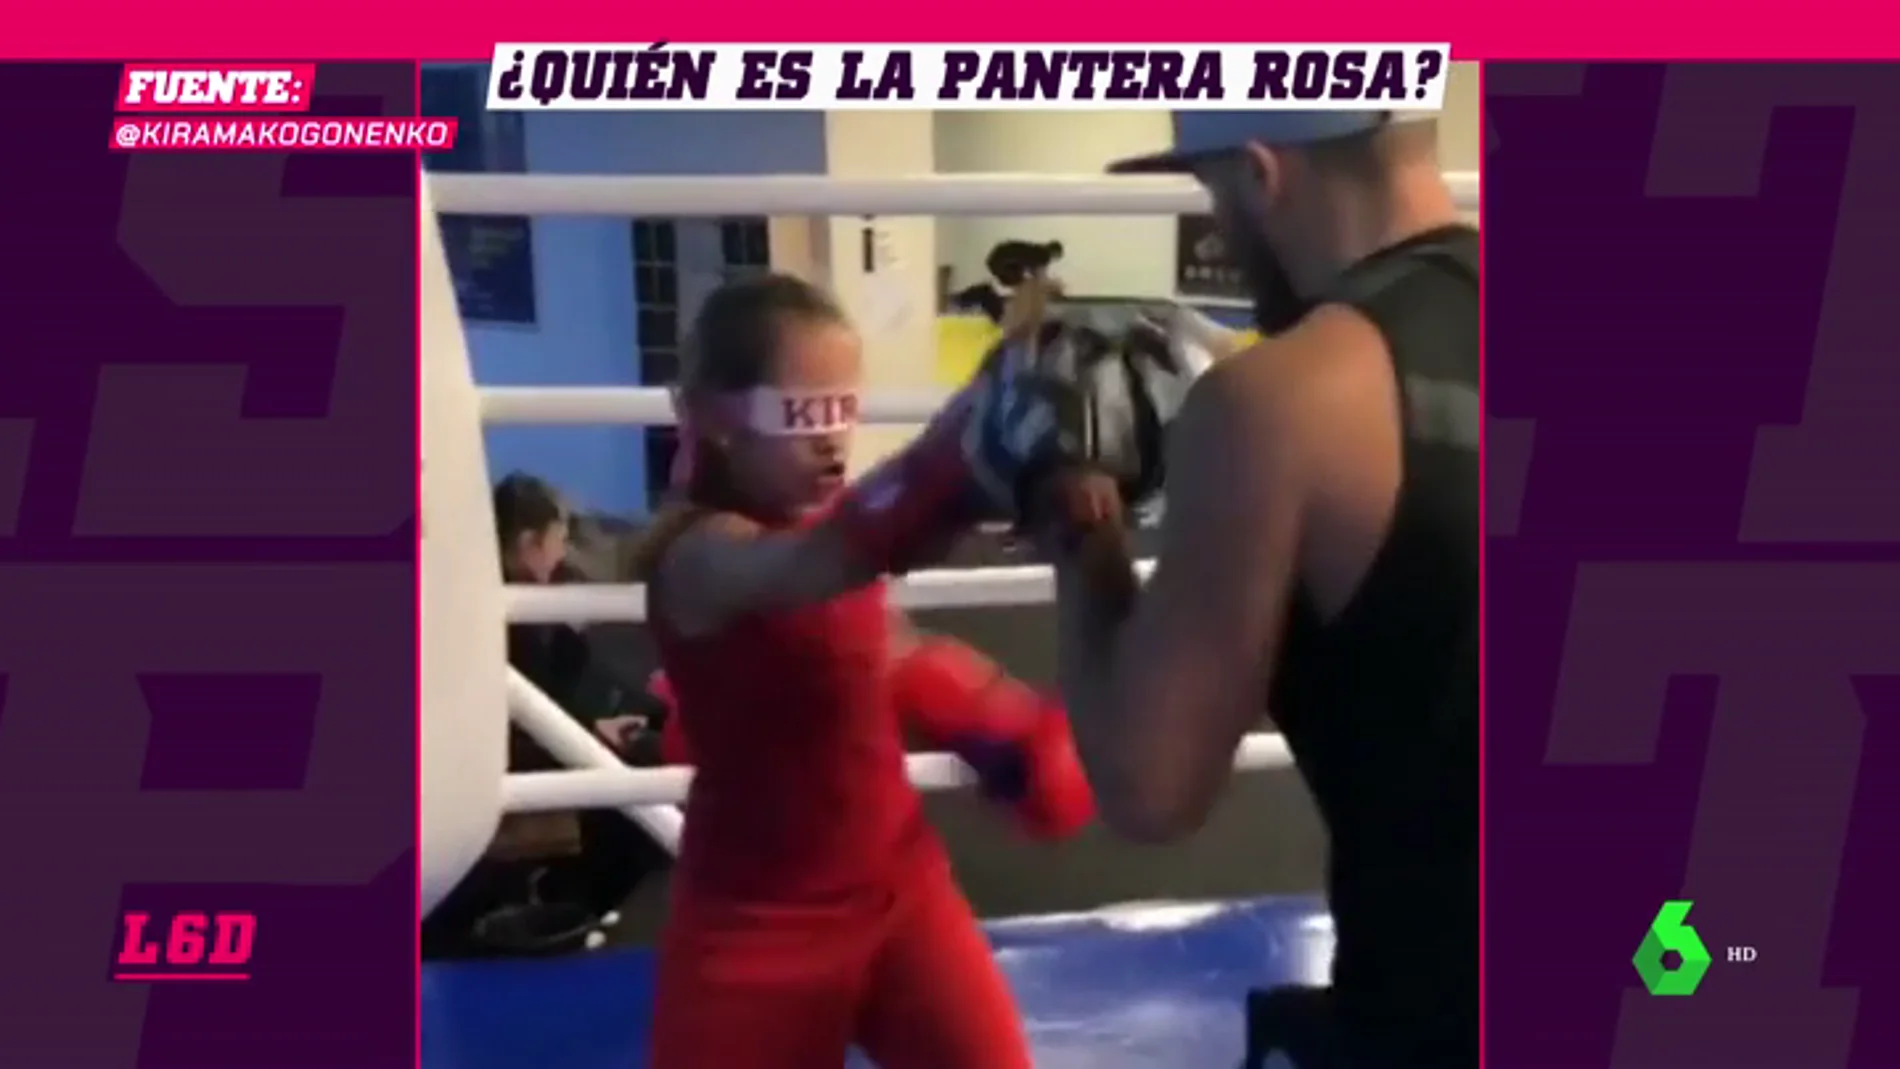 La pequeña 'Pantera Rosa' asombra al mundo con su entrenamiento extremo